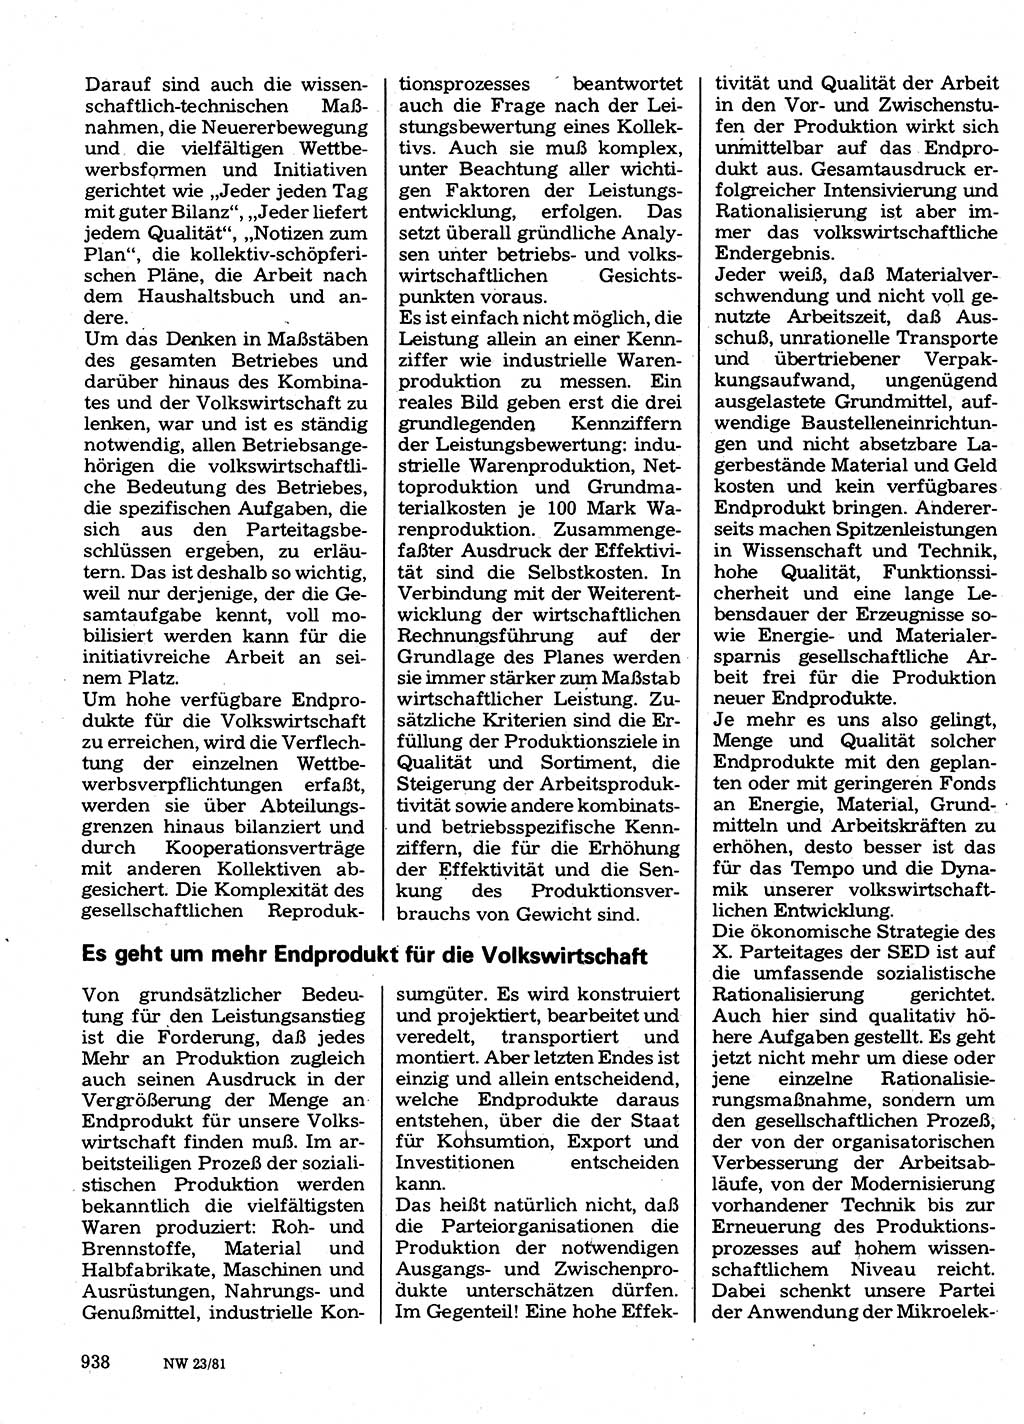 Neuer Weg (NW), Organ des Zentralkomitees (ZK) der SED (Sozialistische Einheitspartei Deutschlands) für Fragen des Parteilebens, 36. Jahrgang [Deutsche Demokratische Republik (DDR)] 1981, Seite 938 (NW ZK SED DDR 1981, S. 938)